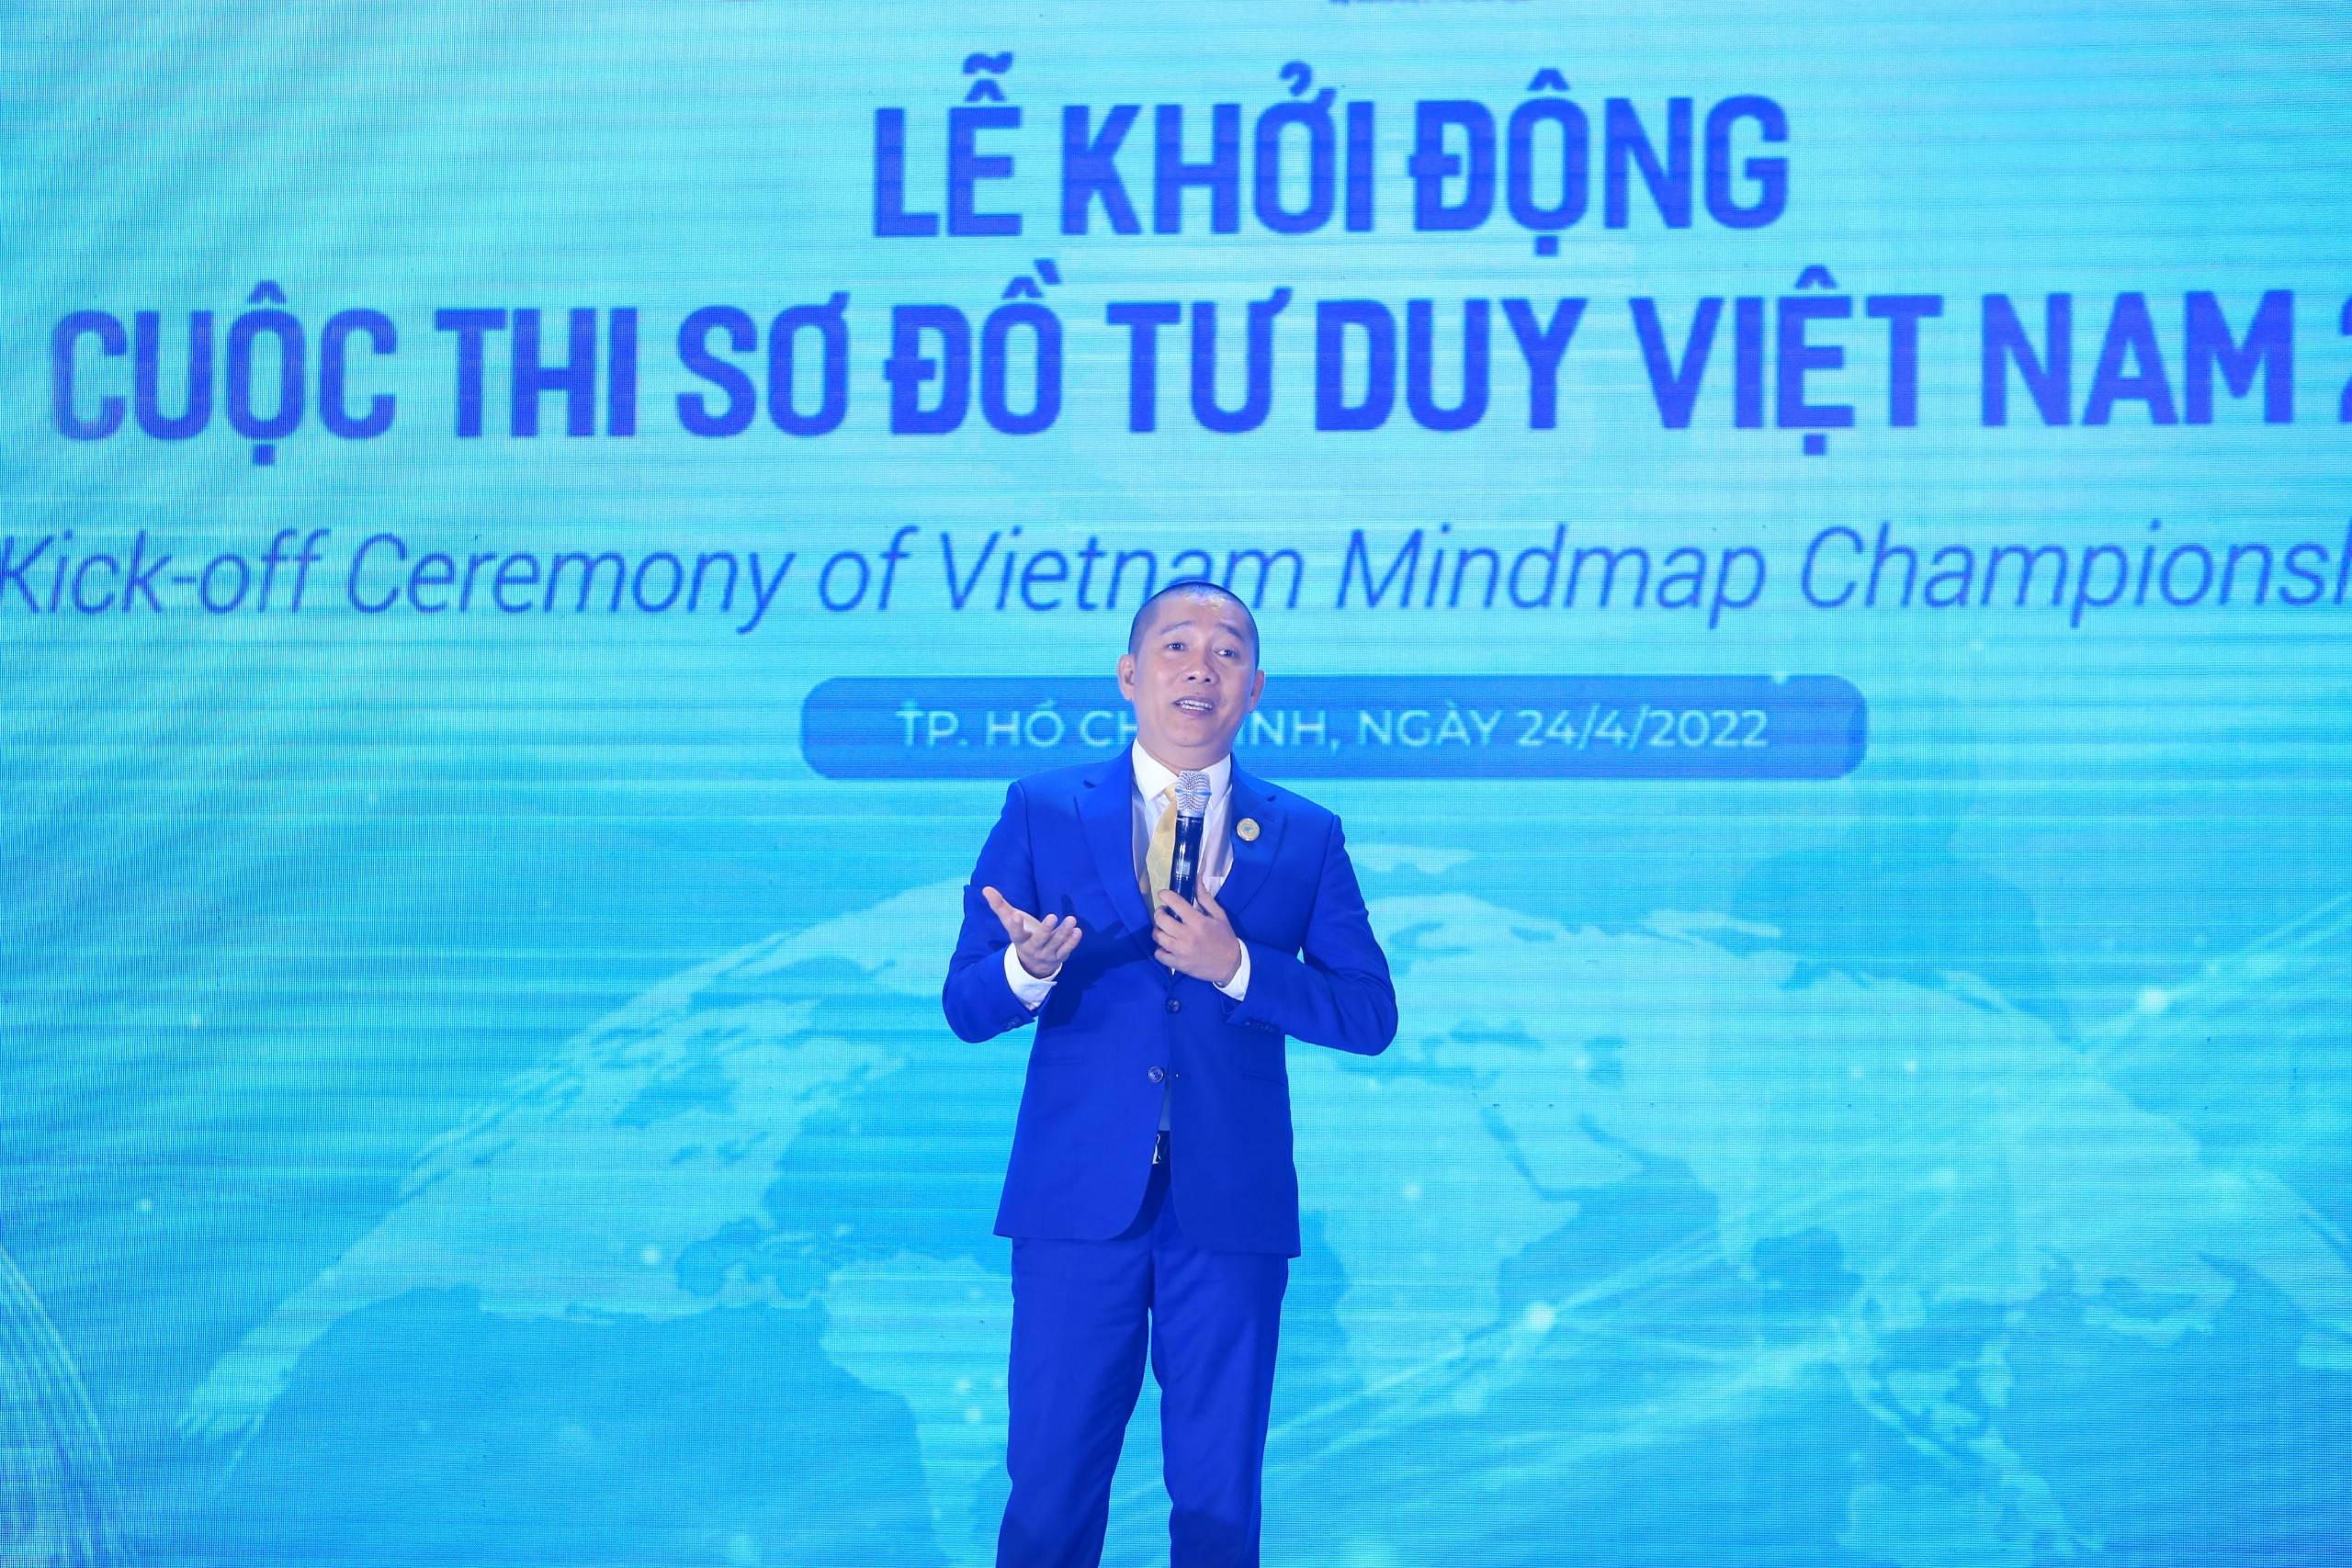 Sơ đồ tư duy Việt Nam 2022\': giải thưởng gần 3 tỉ đồng đang chờ ...